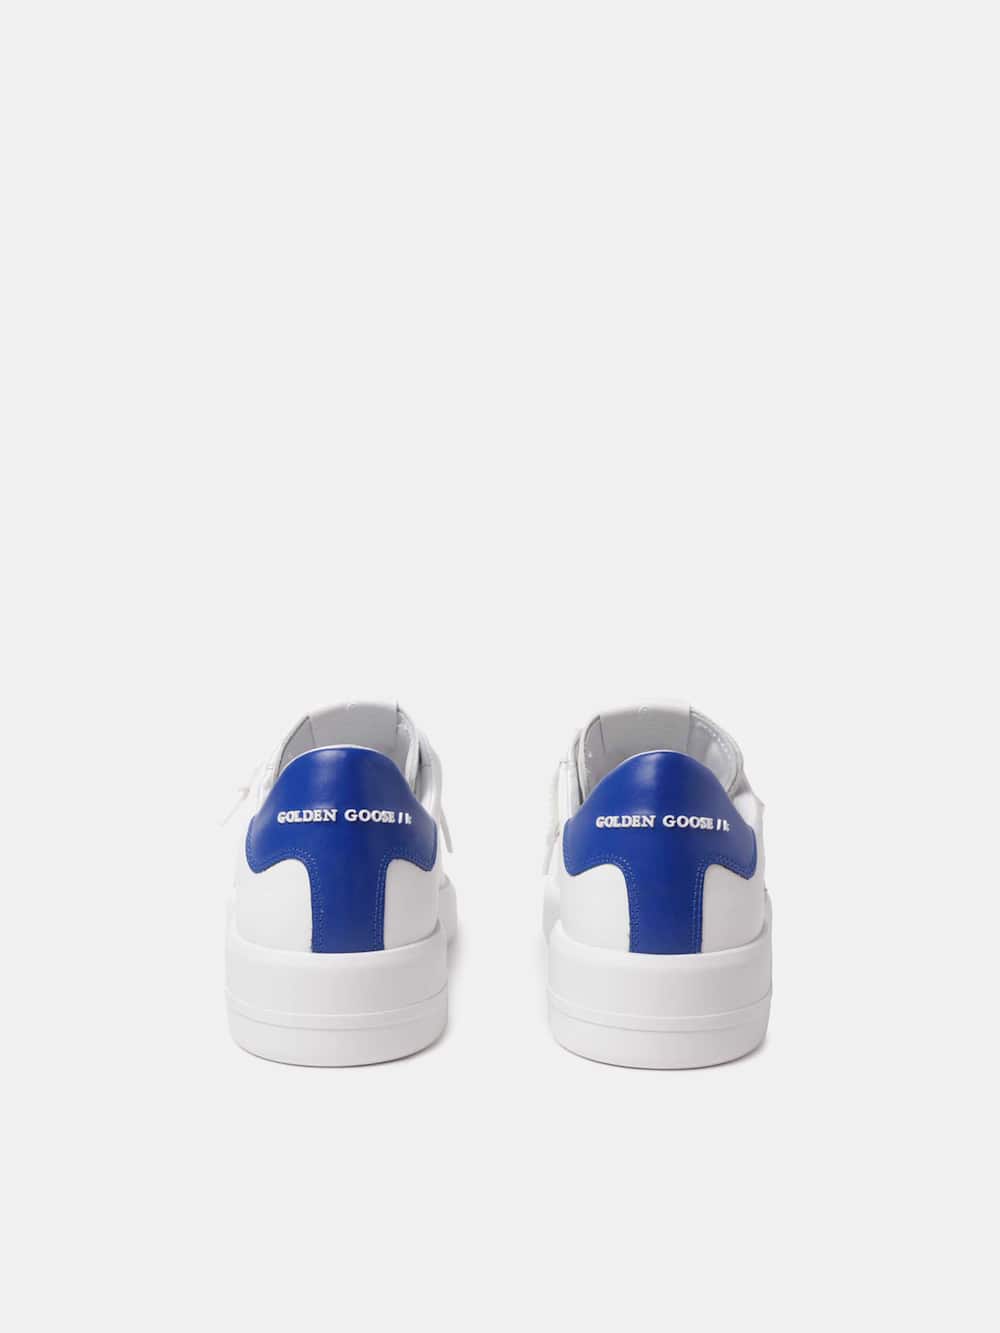 Golden Goose - Purestar sneakers with blue heel tab in 